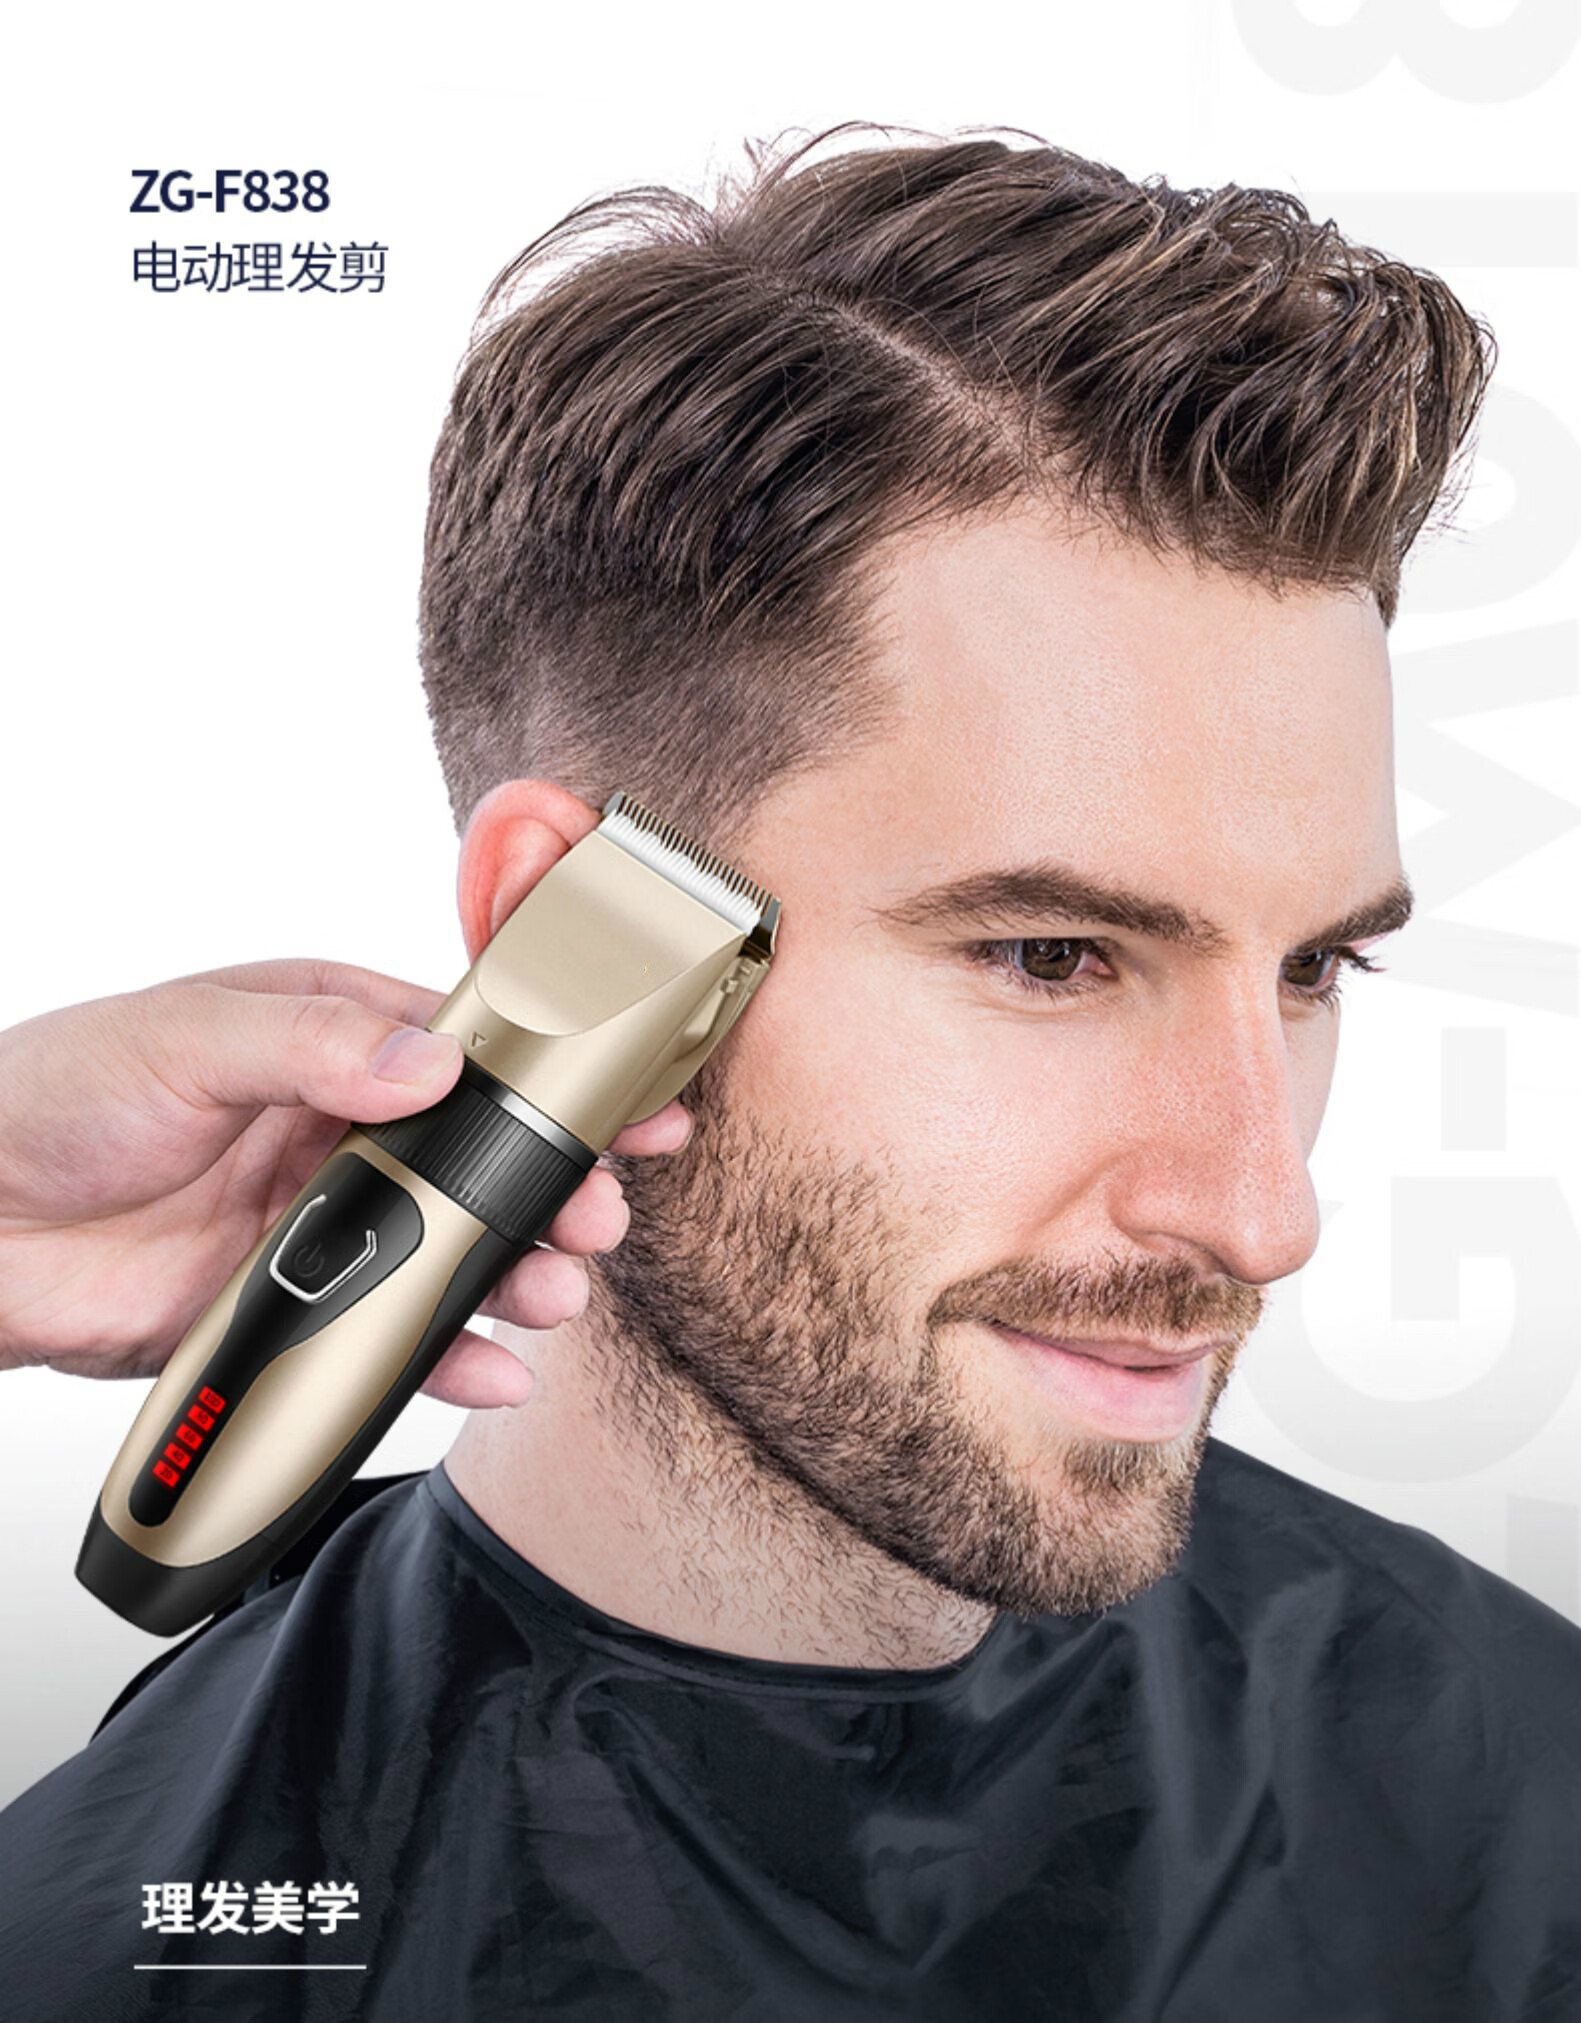 理发器电推剪头发充电式推子自助剃发电动剃头刀工具家用pic安全不卡